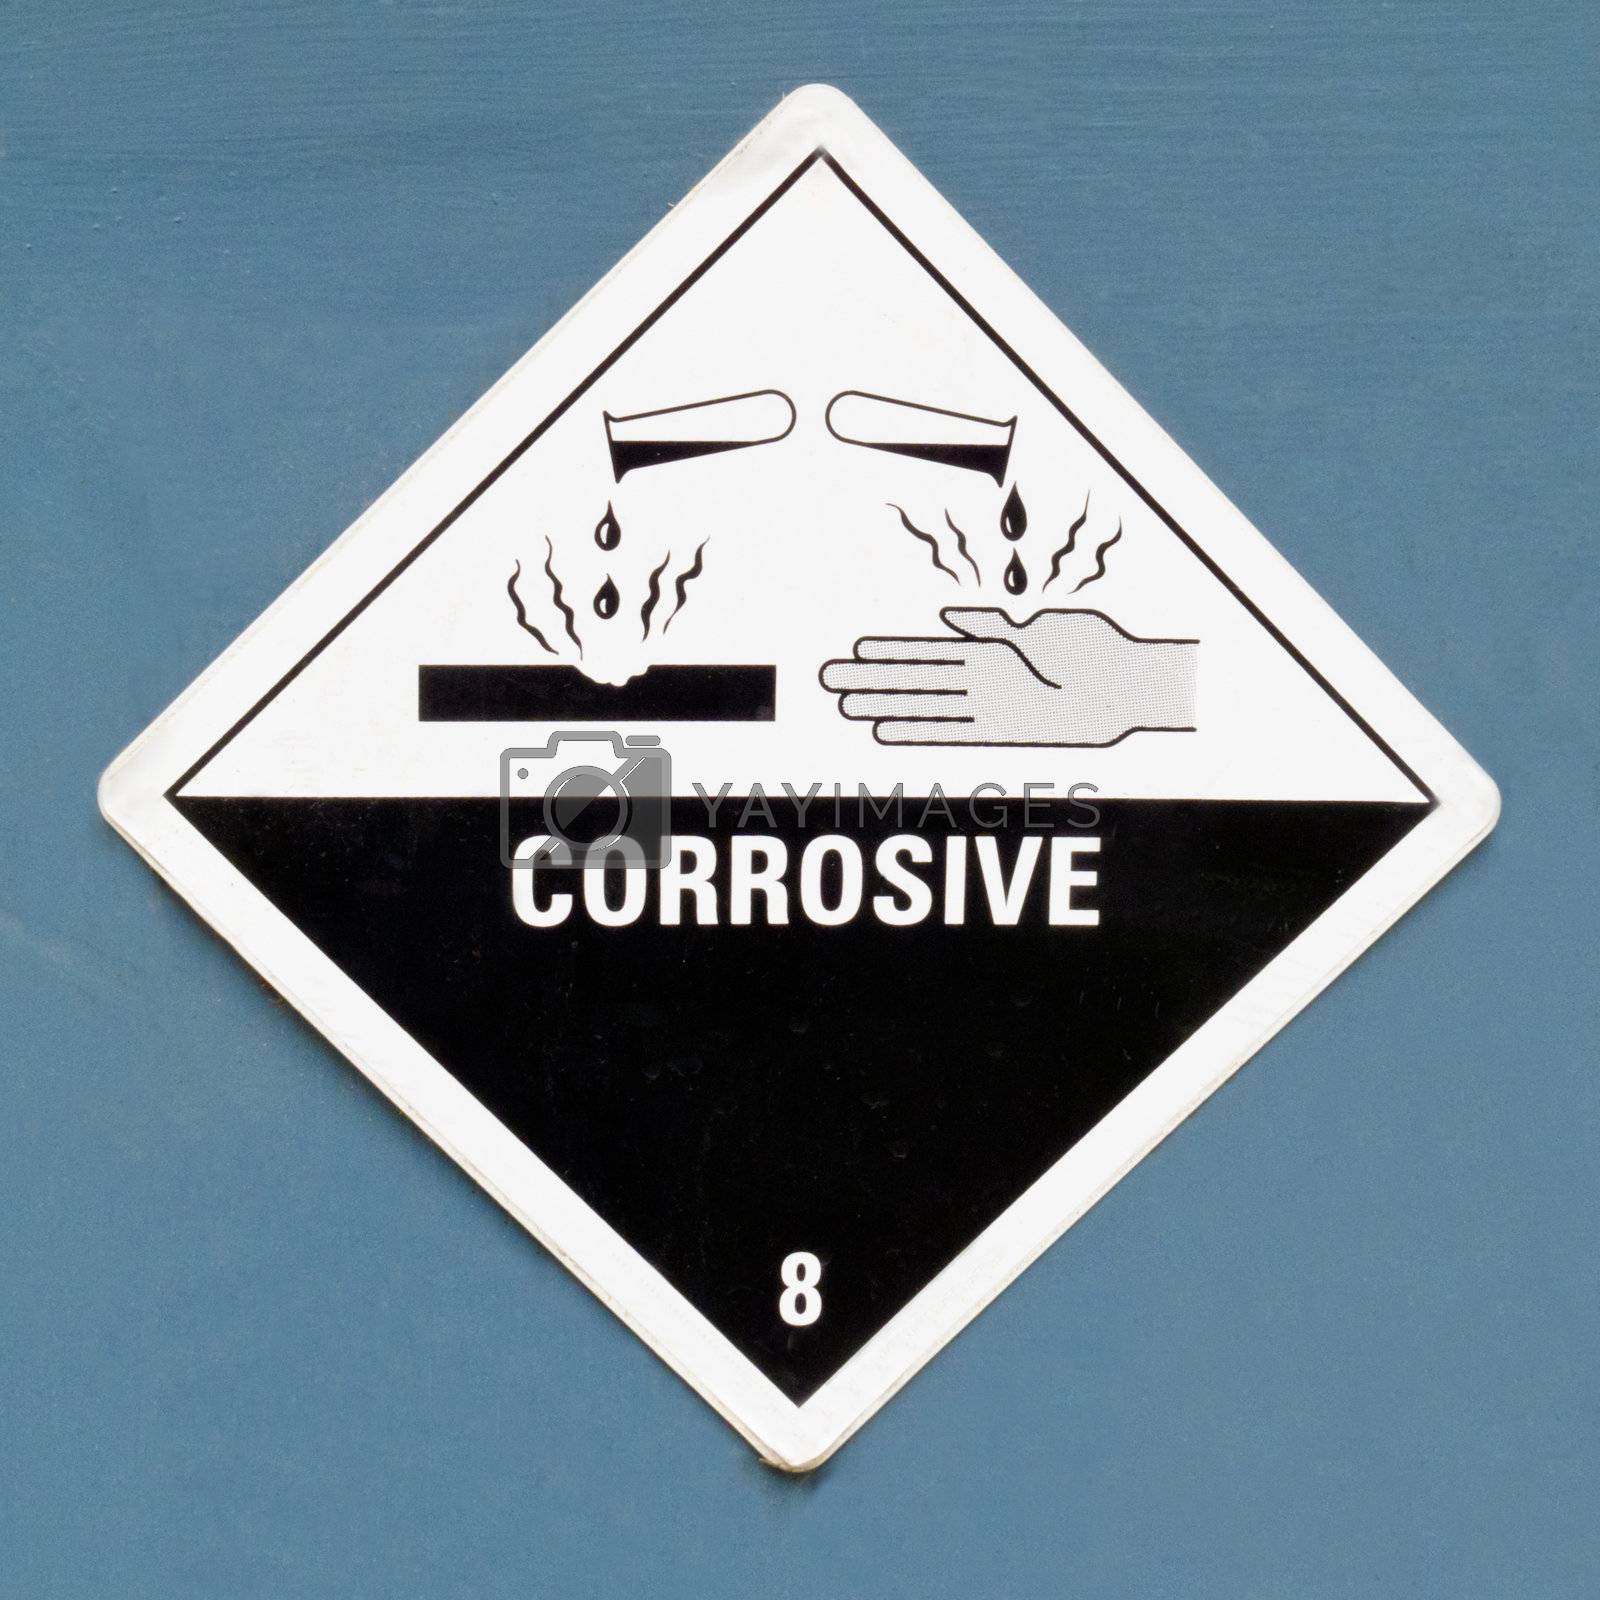 Corrosive hazard symbol warning sign on blue Royalty Free Stock Image ...